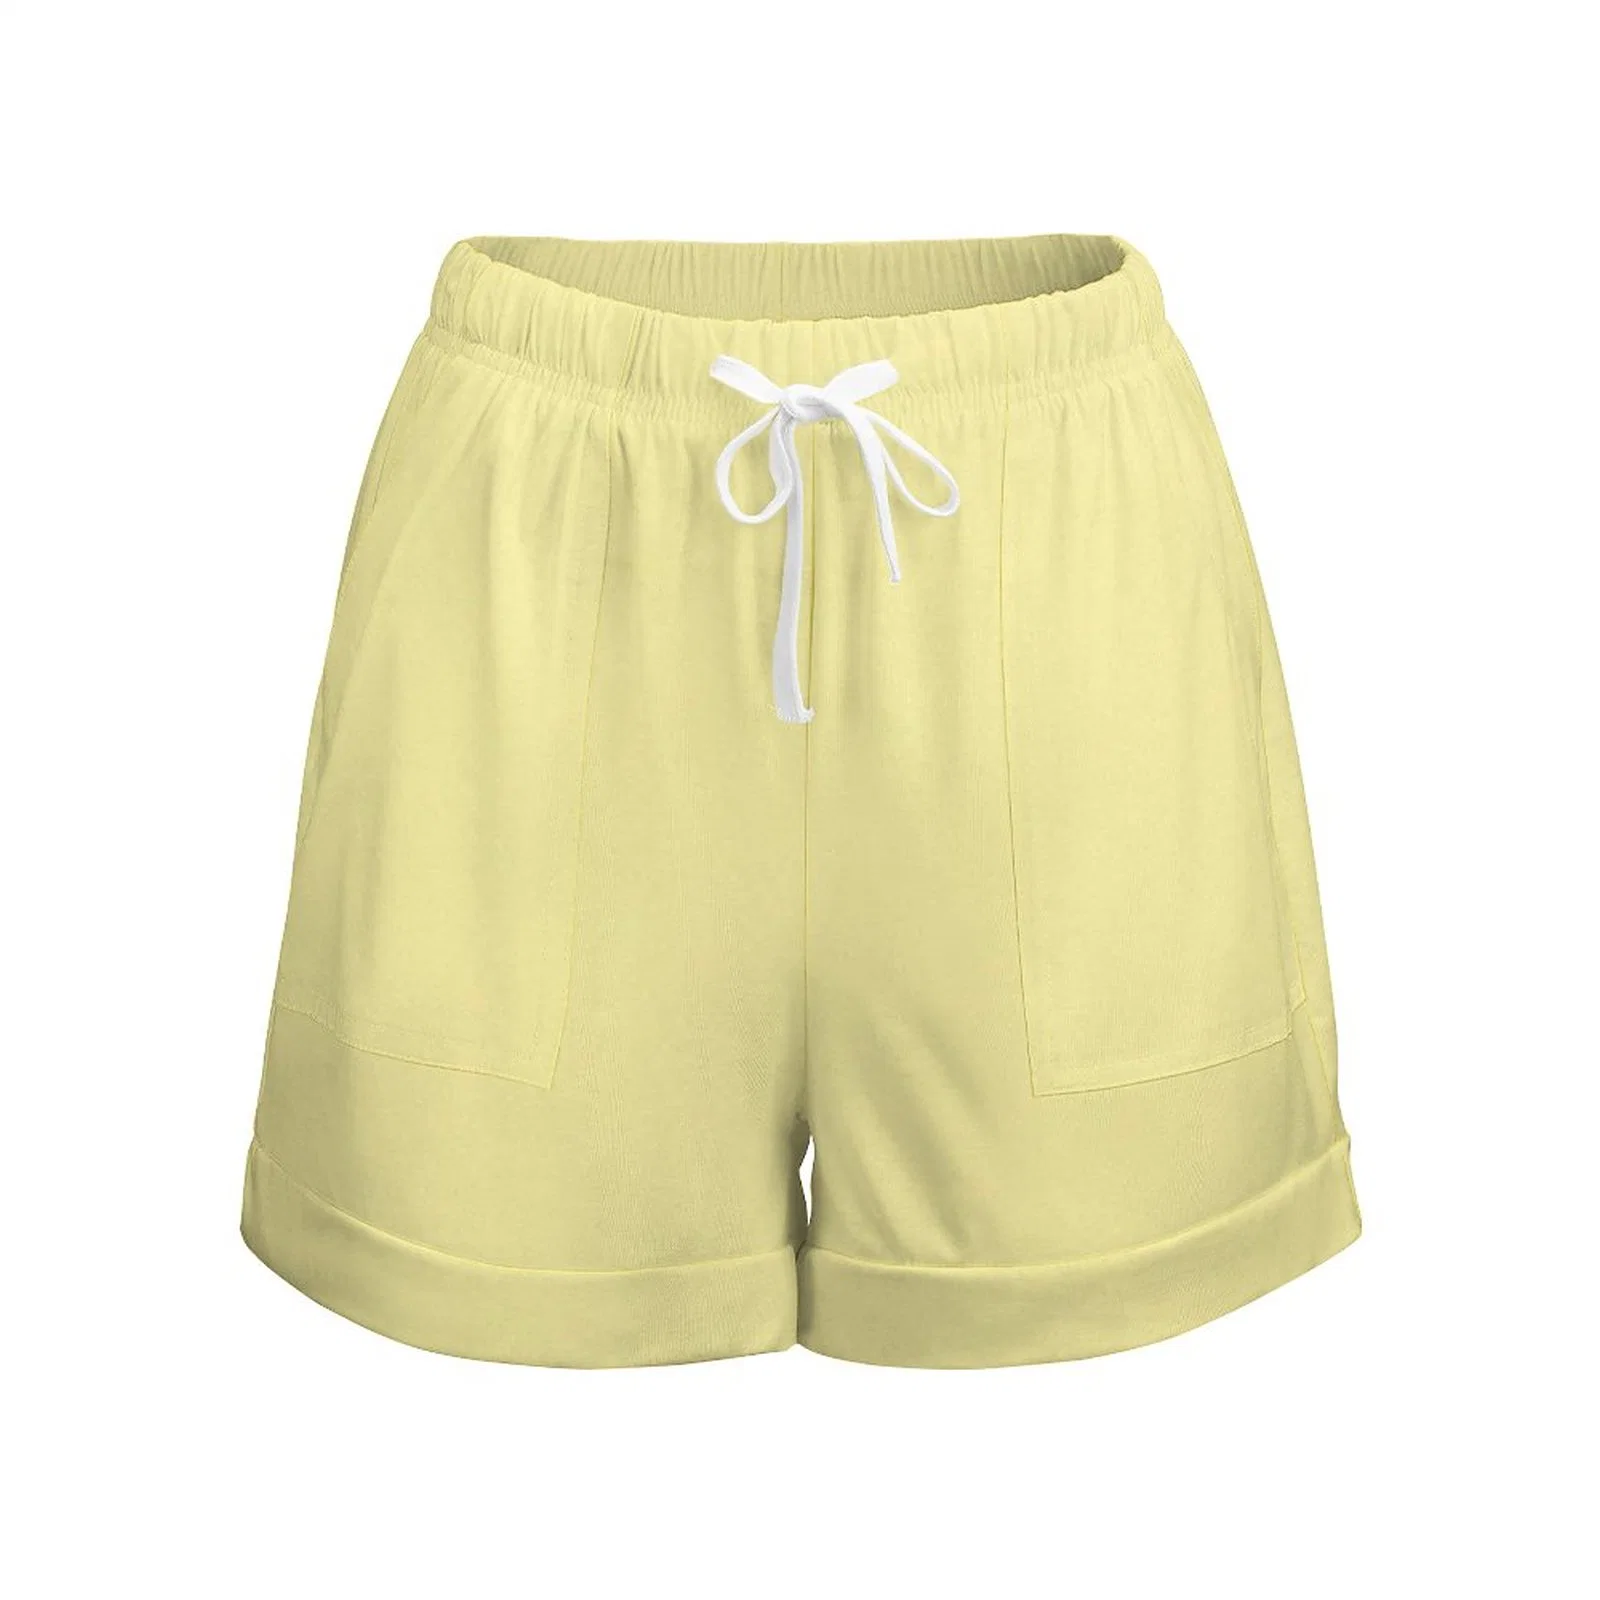 Summer Fashion Wholesale Shorts pantalones cortos personalizados sin cordones